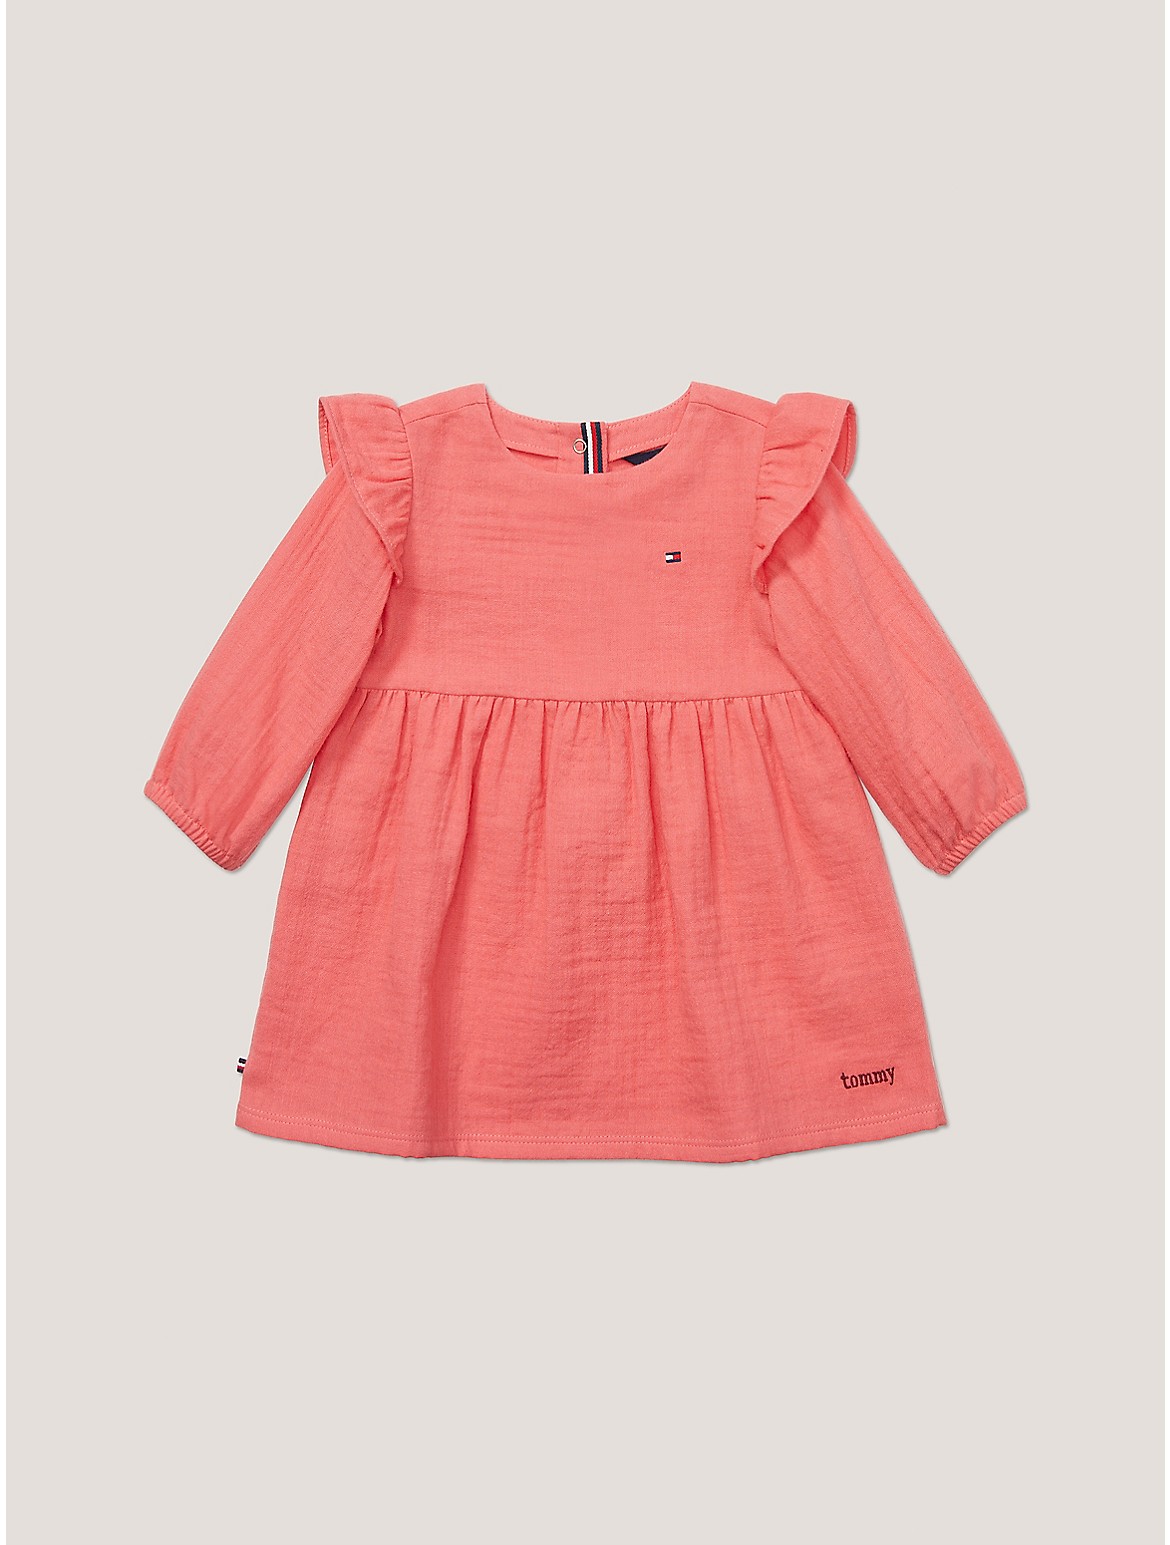 Tommy Hilfiger Girls' Babies' Muslin Frill Dress - Pink - 3-6M